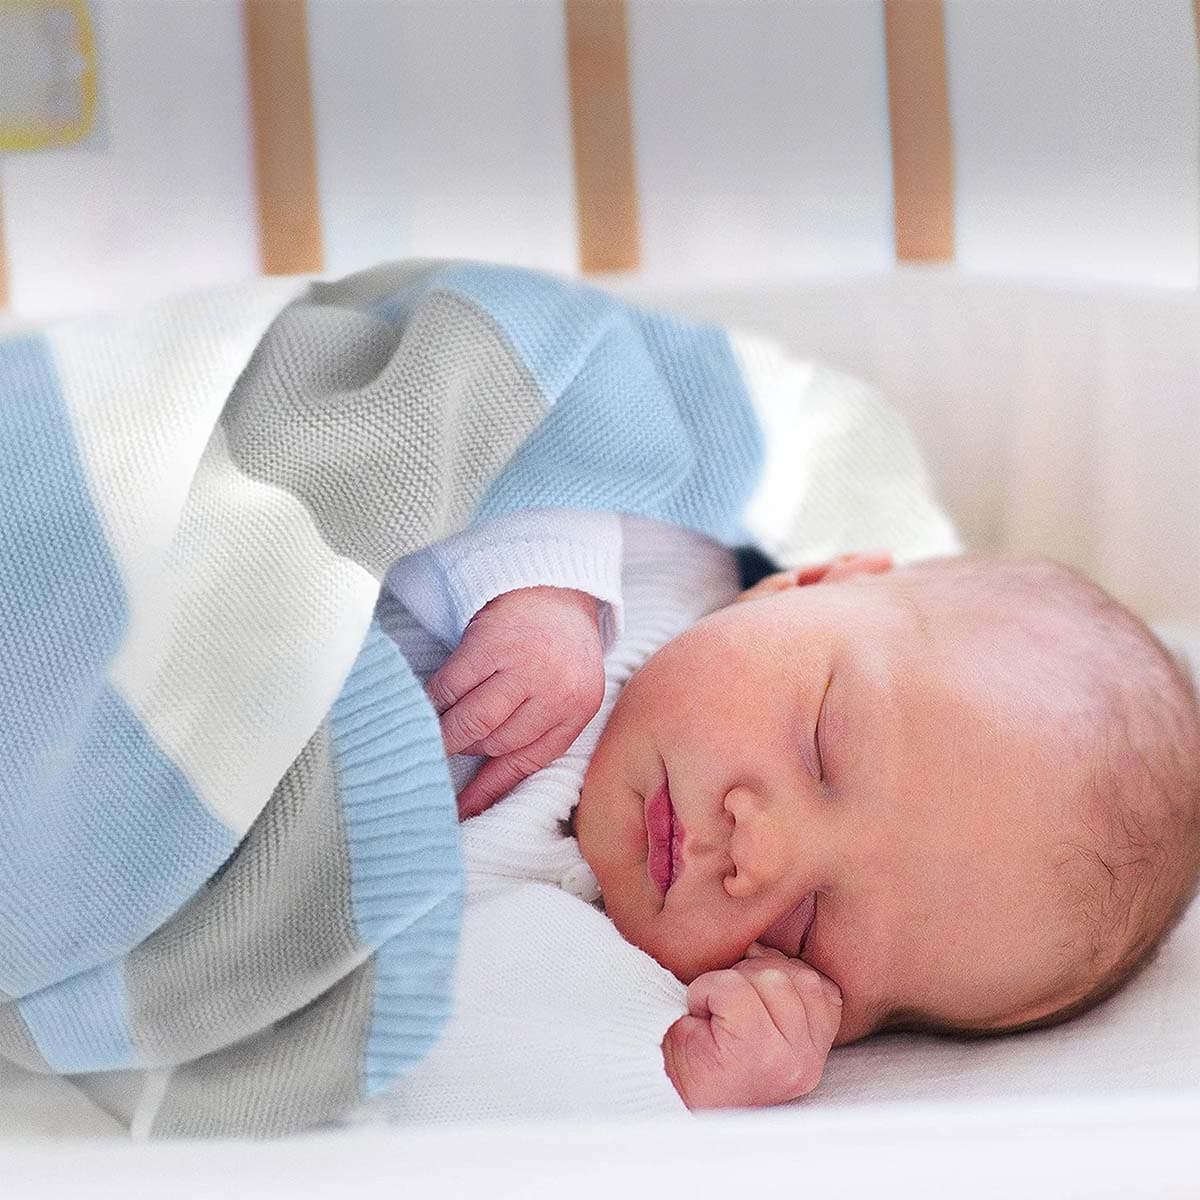 Neugeborenes schläft friedlich eingehüllt in eine blau-weiß-graue gestreifte Bio-Baumwolldecke